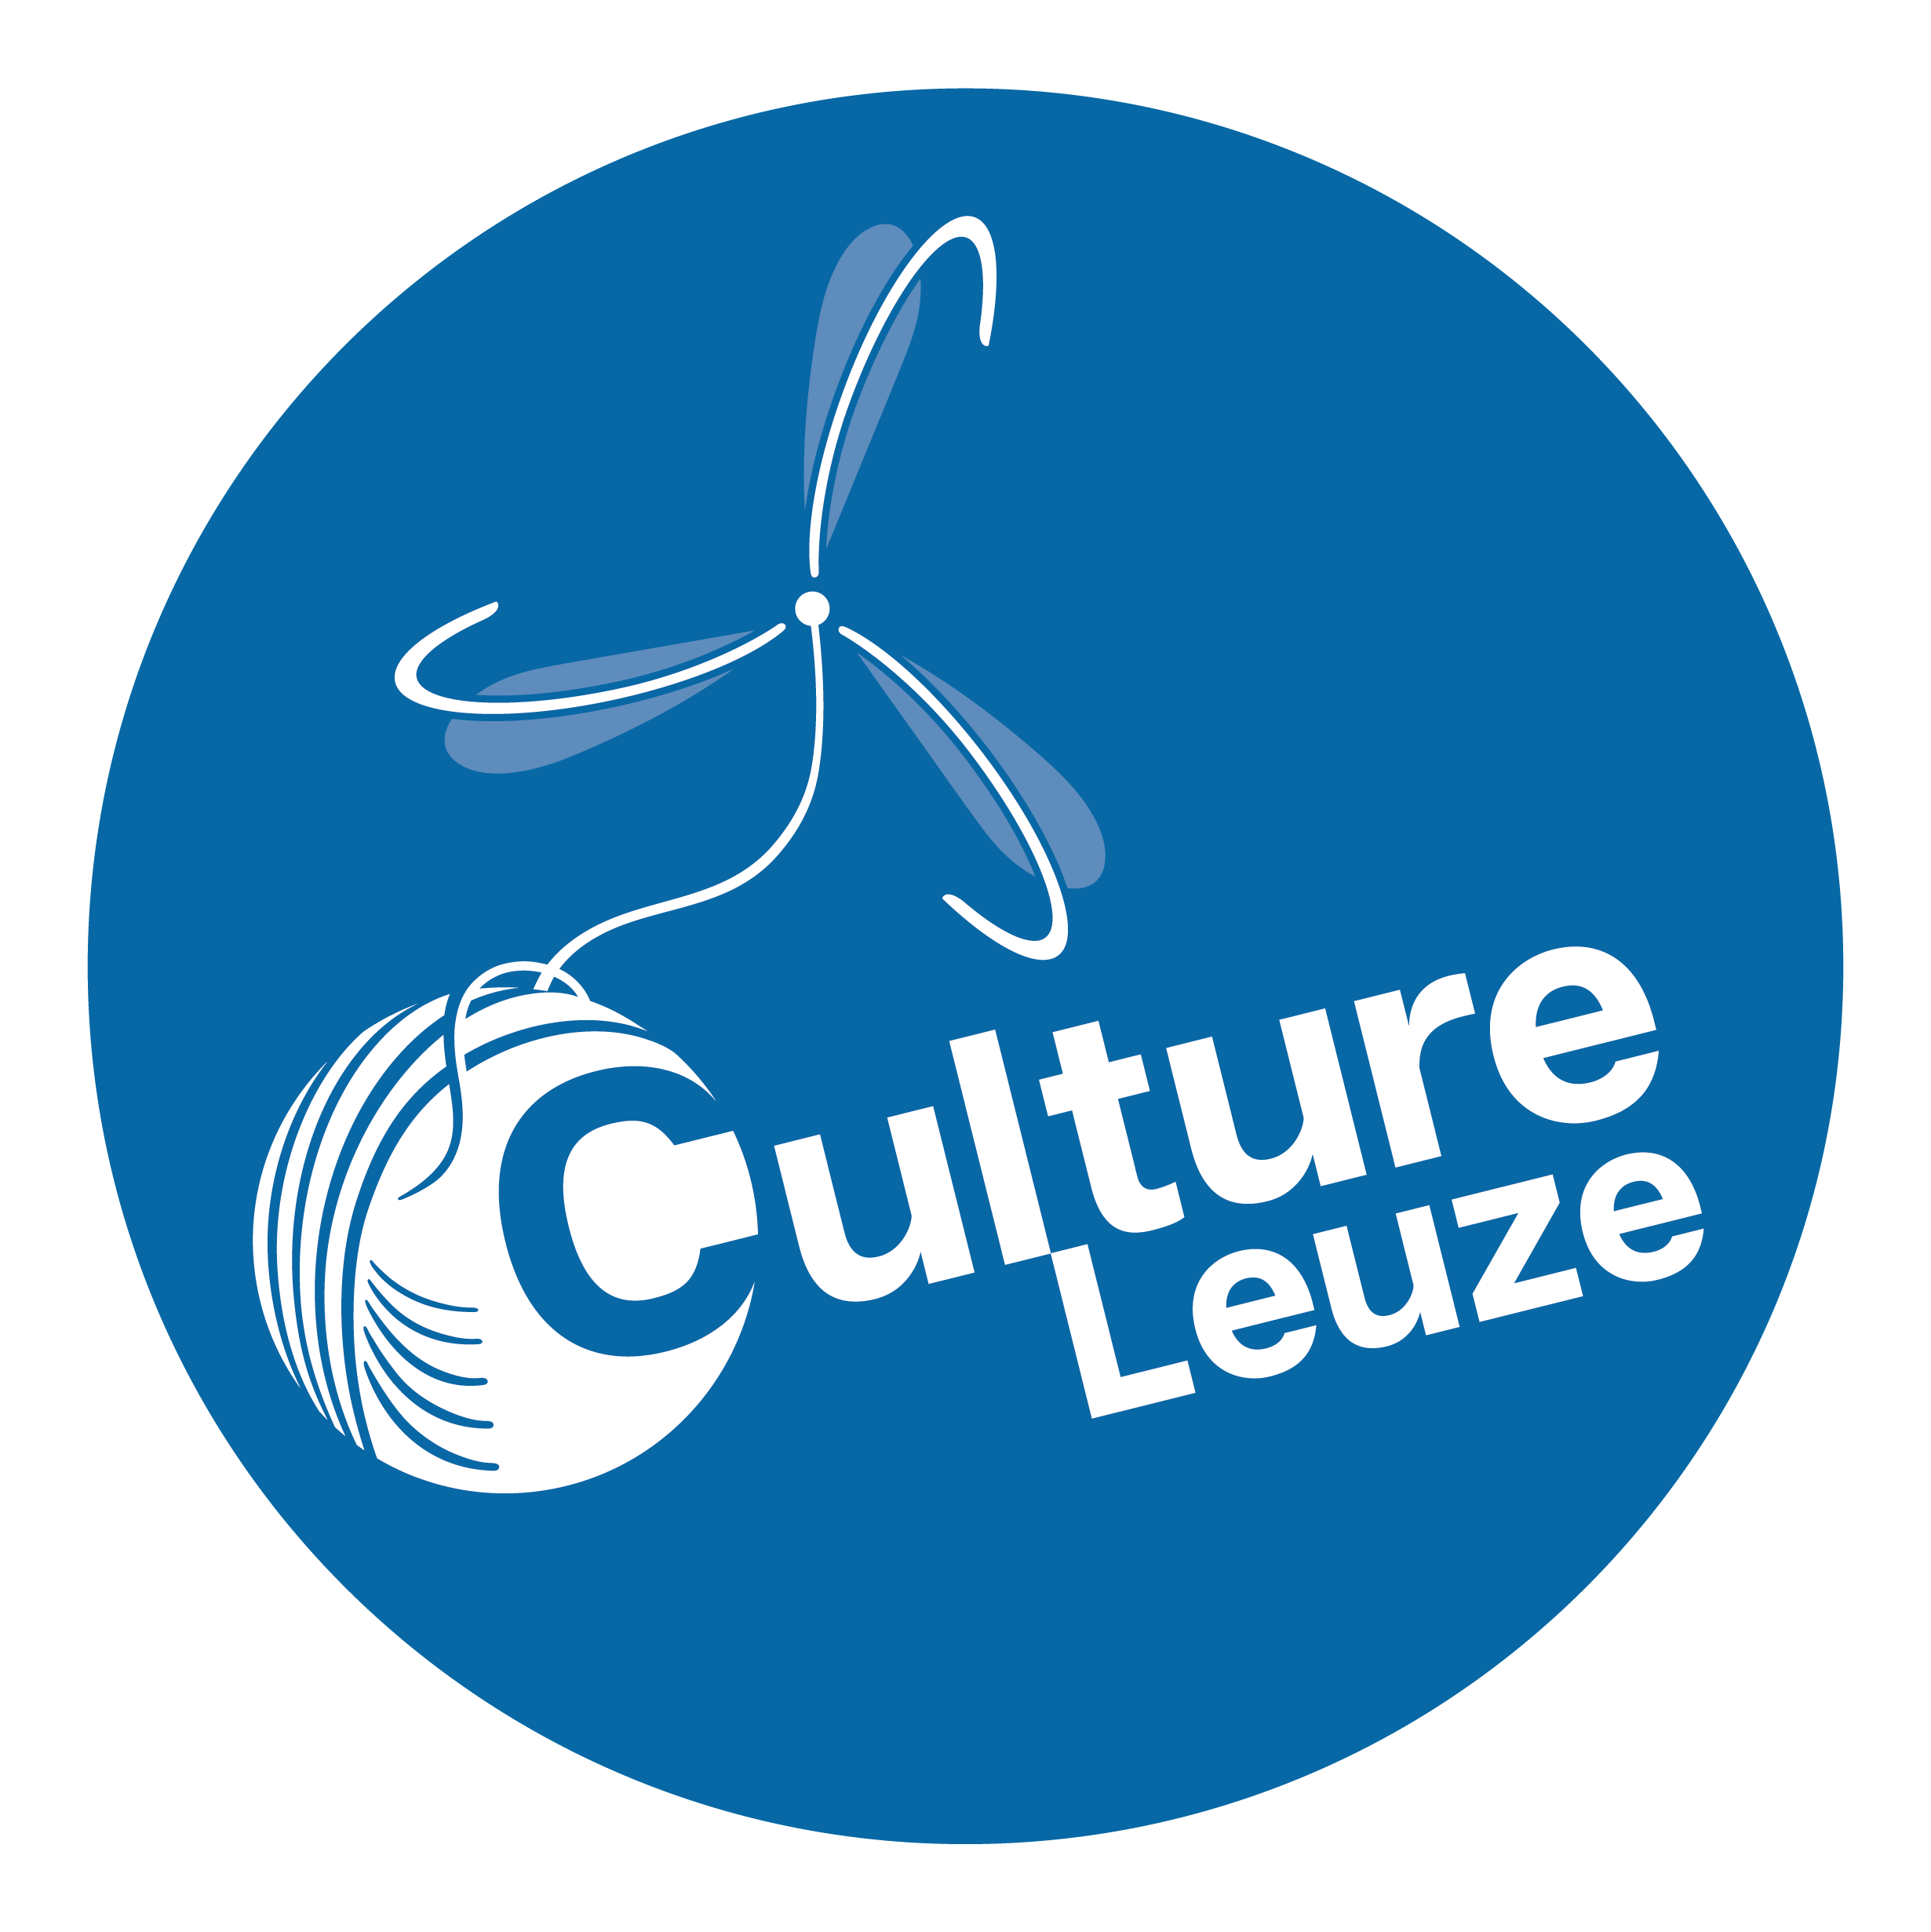 image CC_Leuze.png (0.2MB)
Lien vers: https://www.cultureleuze.be/le-centre-culturel/